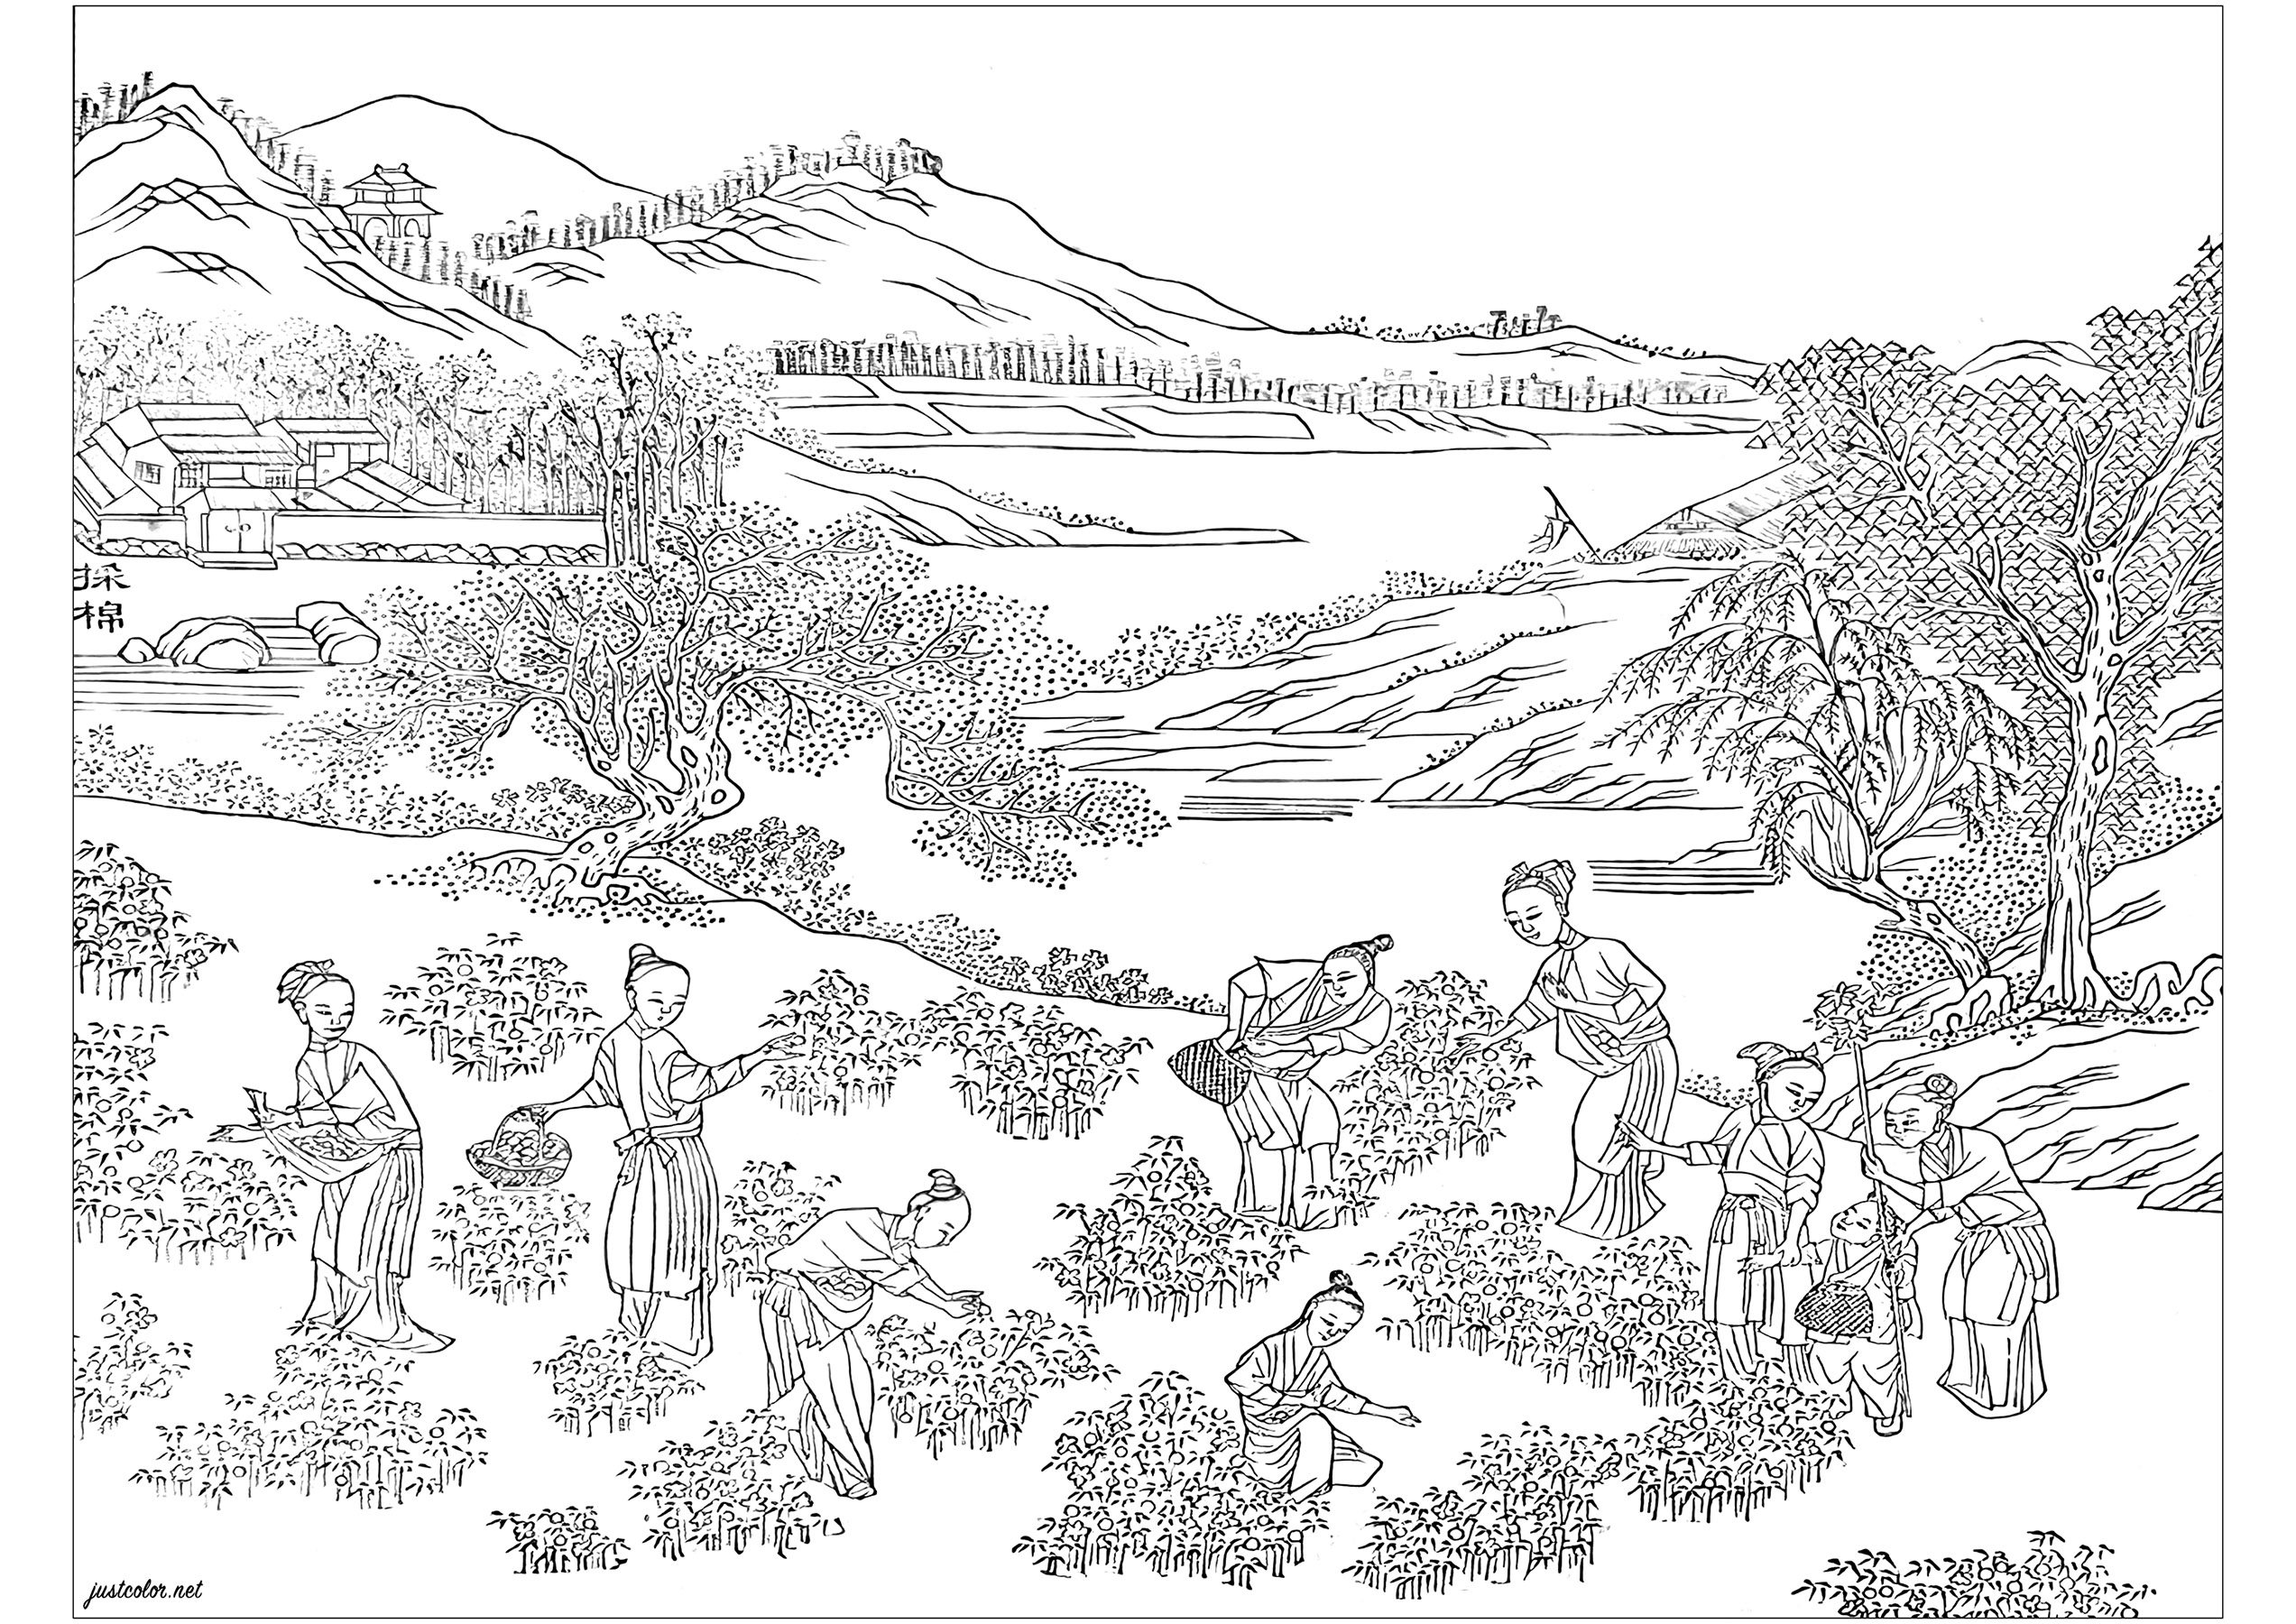 Pagina da colorare creata da una pagina di disegno dell'album a stampa 'Pictures Illustrating Cotton Production' (1765). Questo album è stato prodotto per promuovere la più recente tecnologia per la coltivazione del cotone e la produzione tessile nella Cina del XVIII secolo. Questo libro fa parte della Biblioteca Chester Beatty, a Dublino, Irlanda.